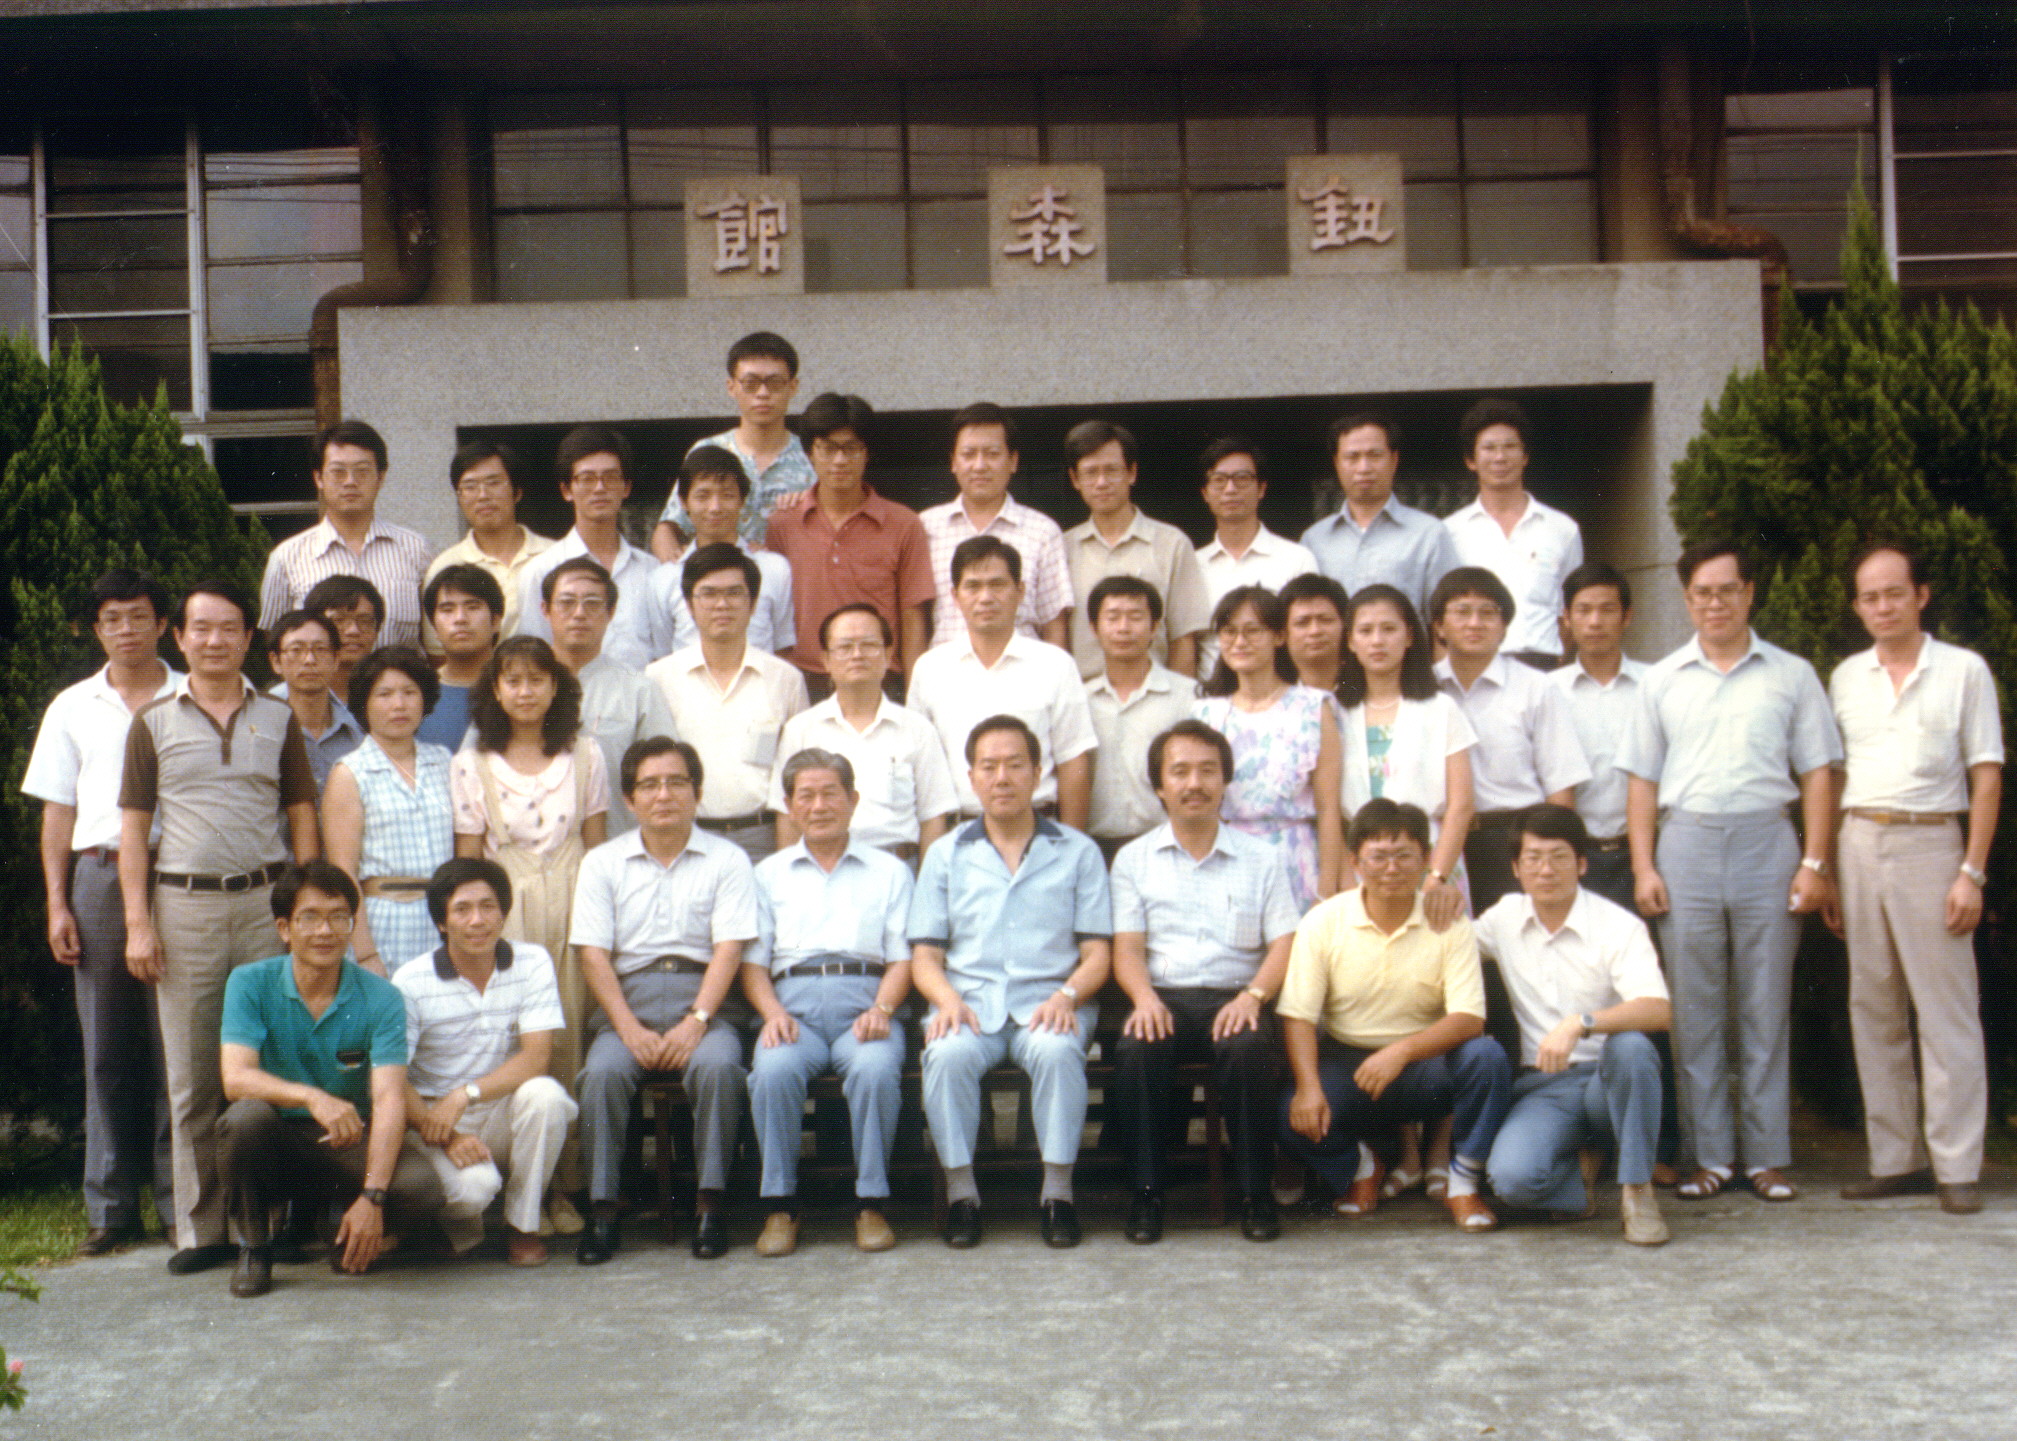 74年8月16日第100次獸醫組織病理研討會與會人員於國立臺灣大學獸醫學系鈕森館前合照。